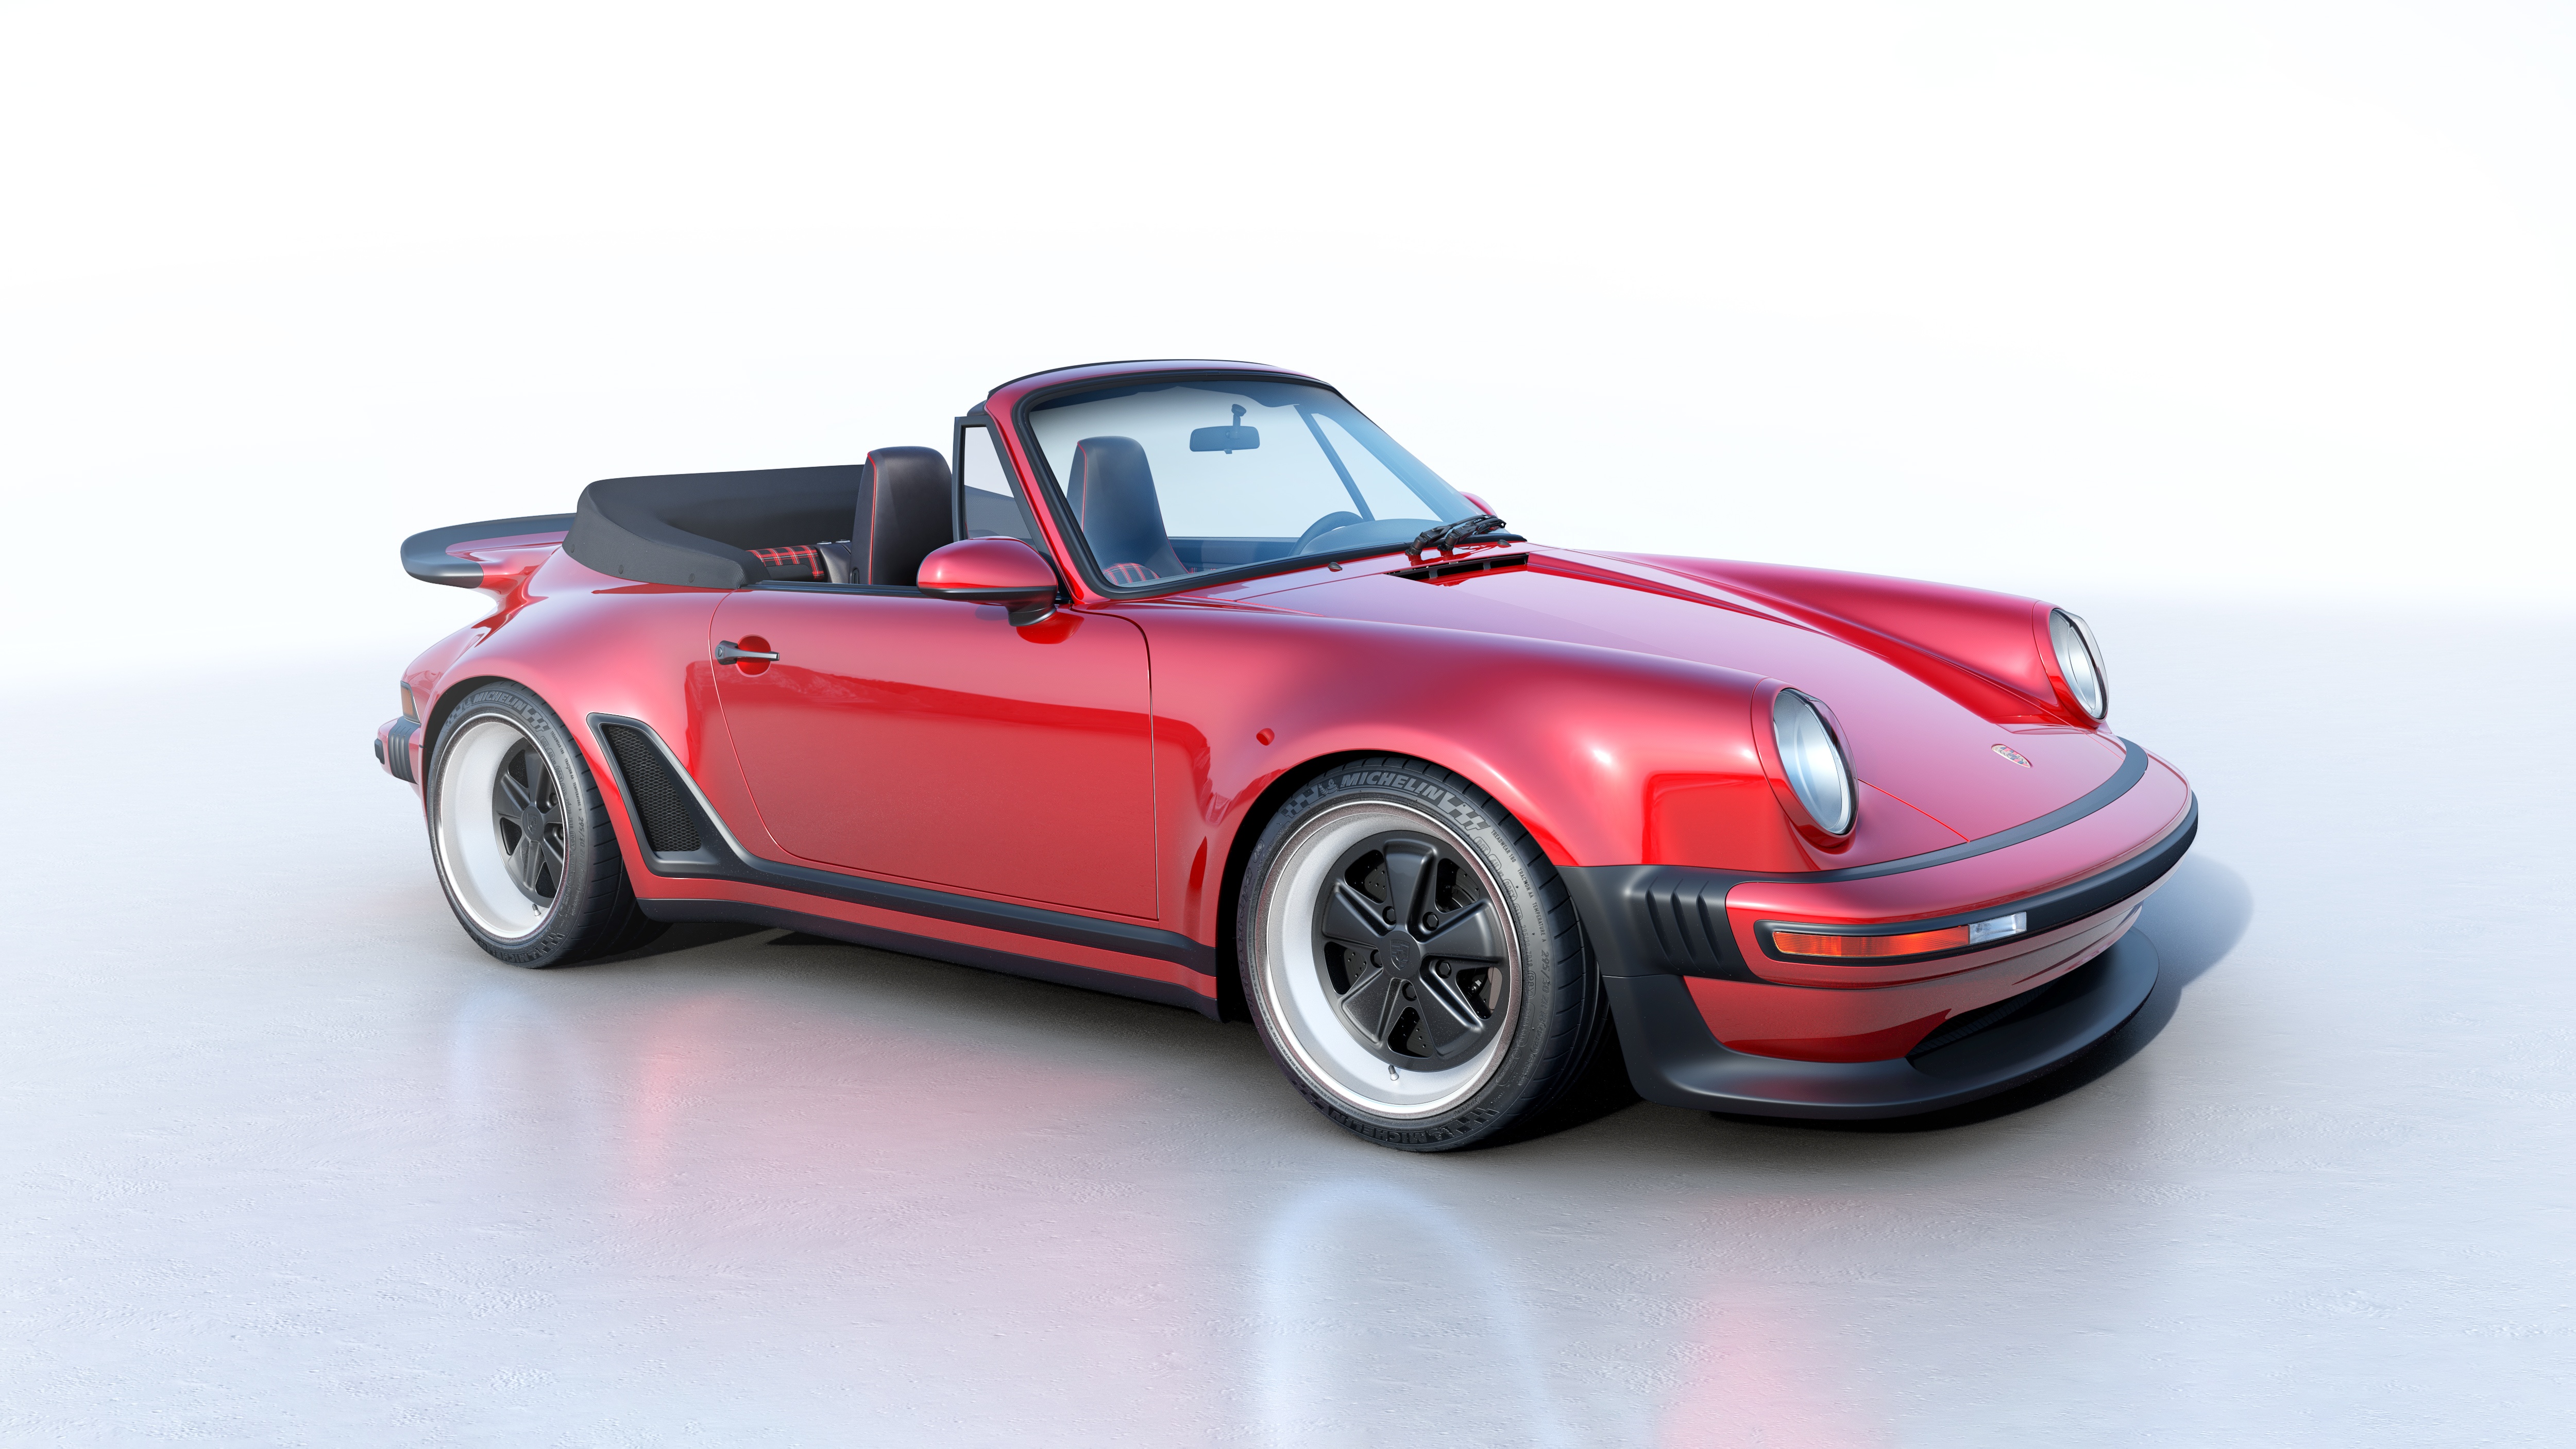 Fondos de pantalla Porsche Singer Turbo